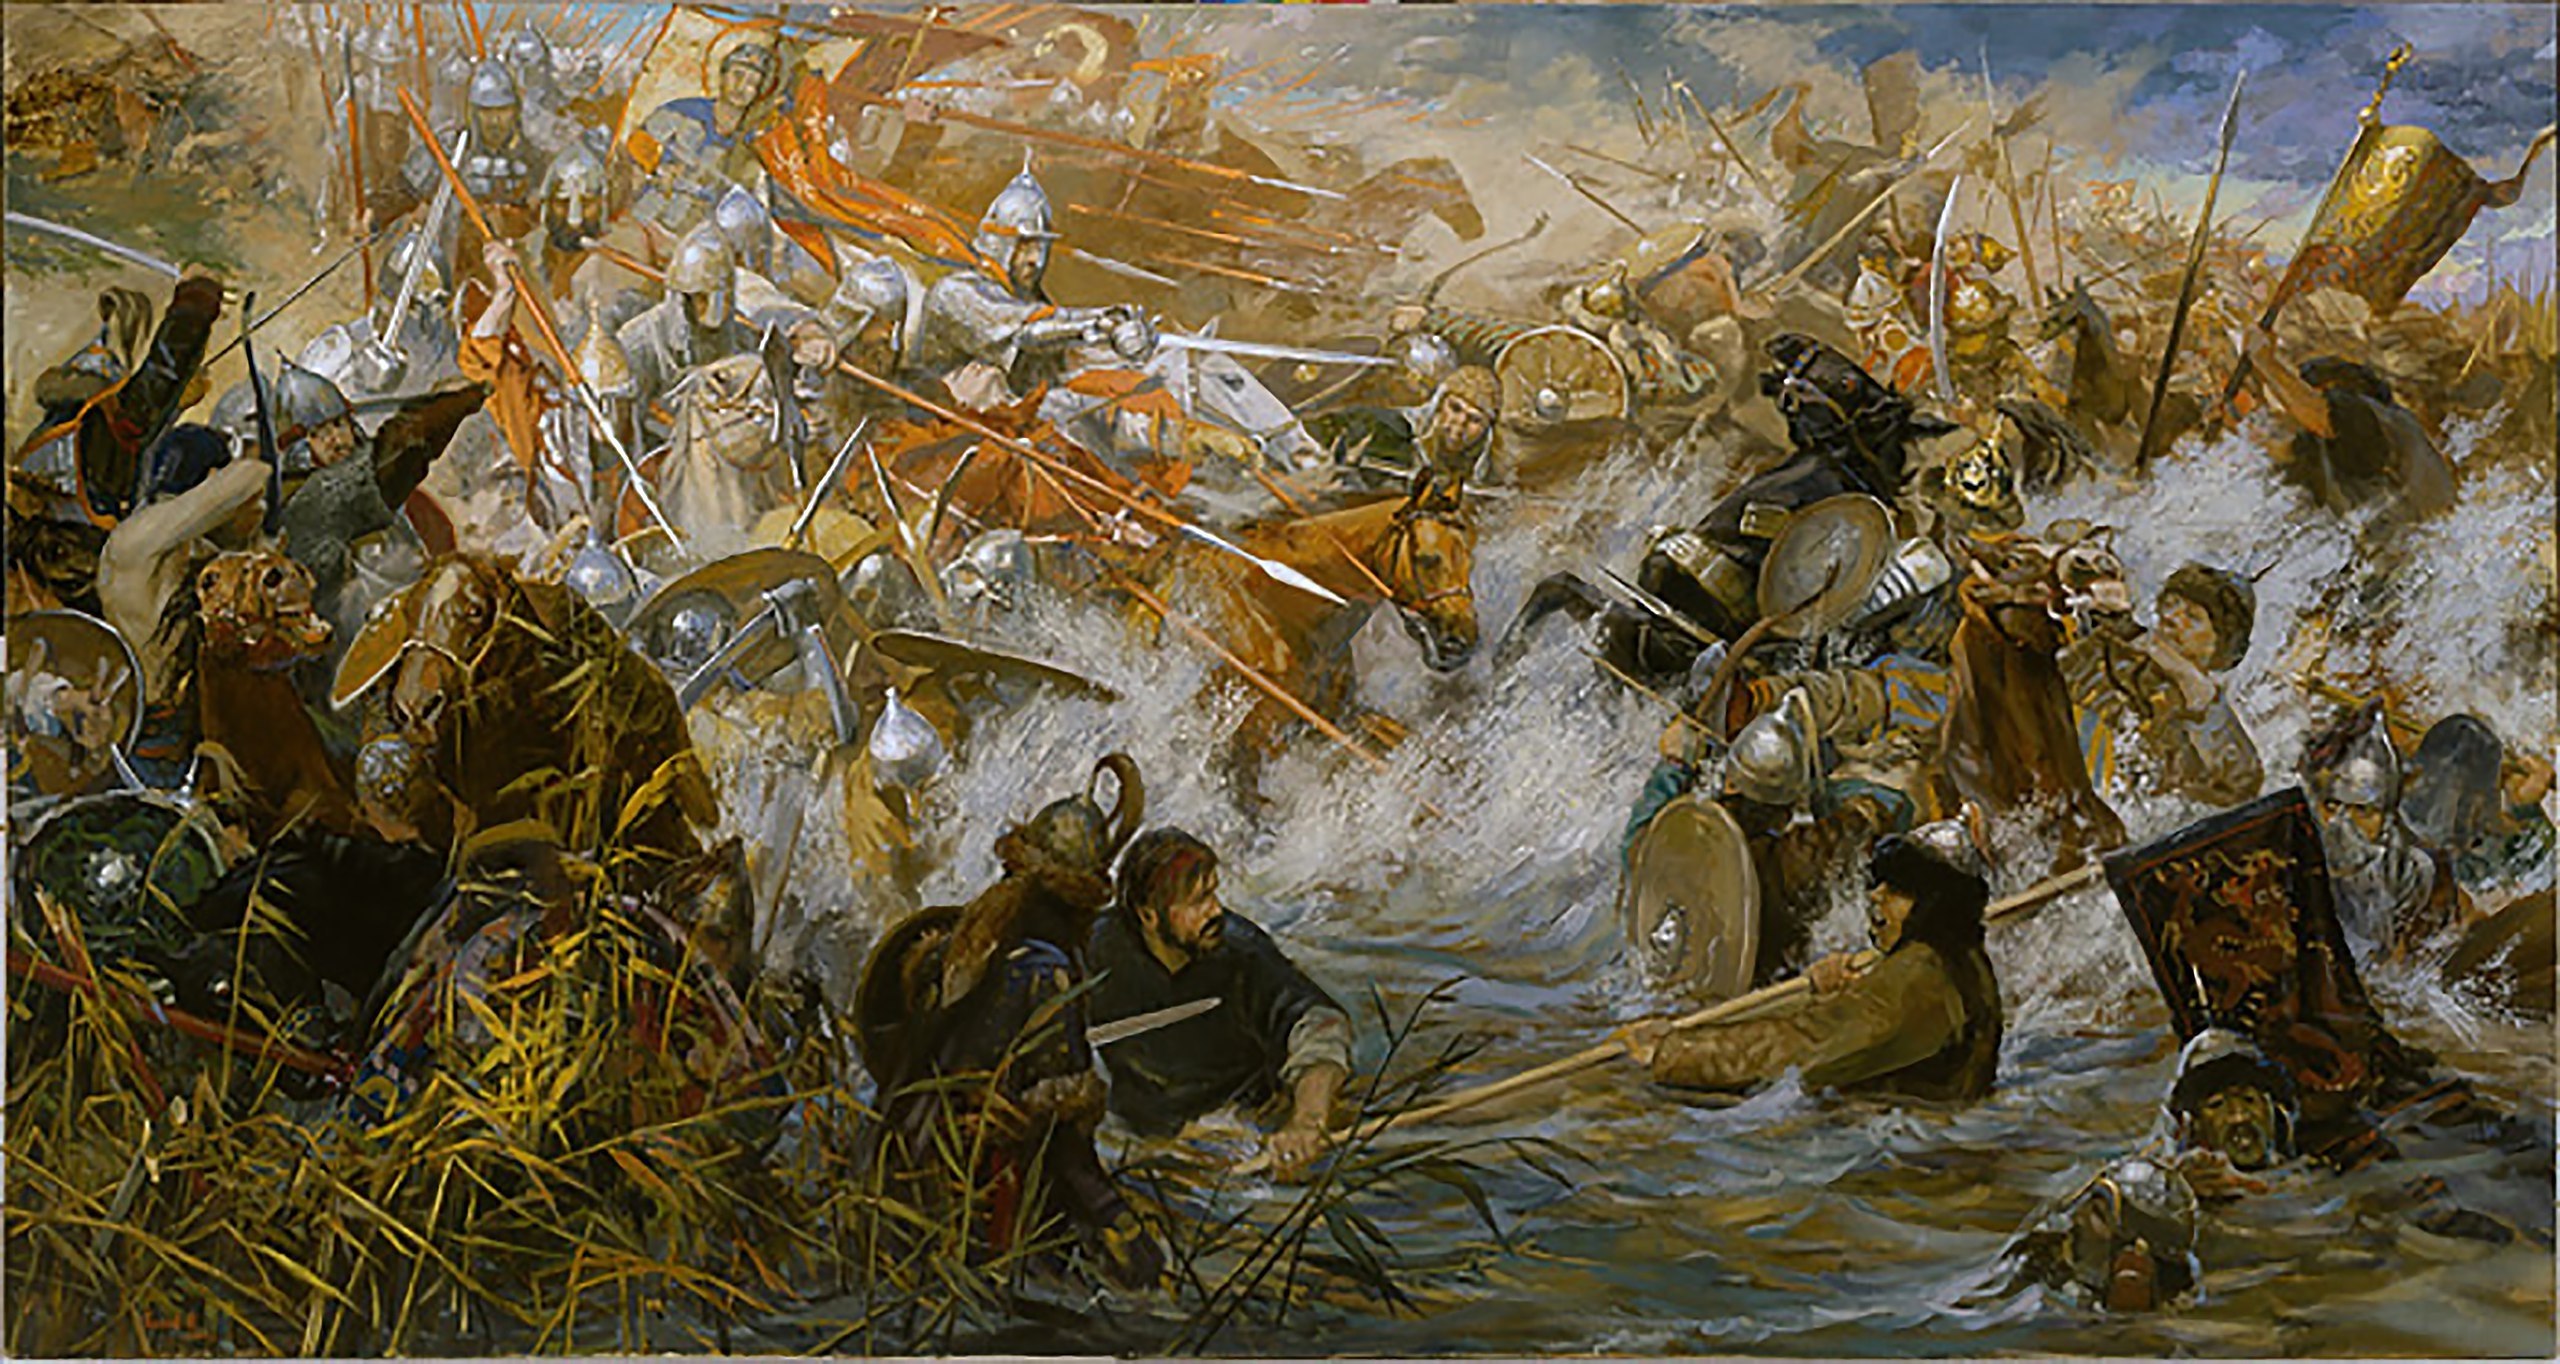 Тесним мы шведов рать за ратью темнеет. Дмитрий Донской битва на реке Воже. 1378 Битва на реке Воже. Шелонская битва 1471. Куликовская битва Рыженко.